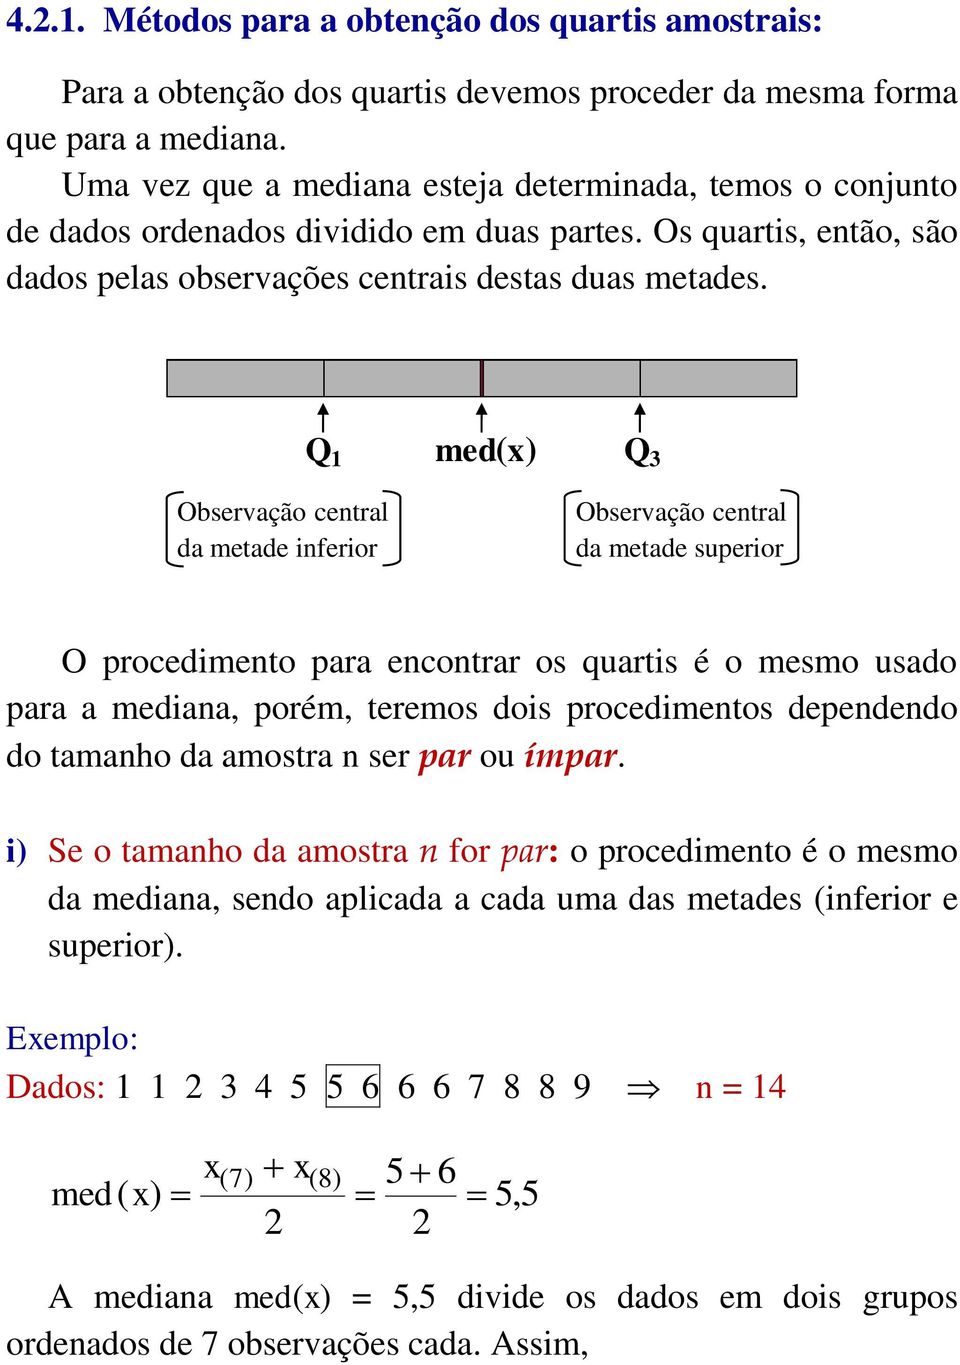 Q 1 med(x) Q 3 Observação central da metade inferior Observação central da metade superior O procedimento para encontrar os quartis é o mesmo usado para a mediana, porém, teremos dois procedimentos